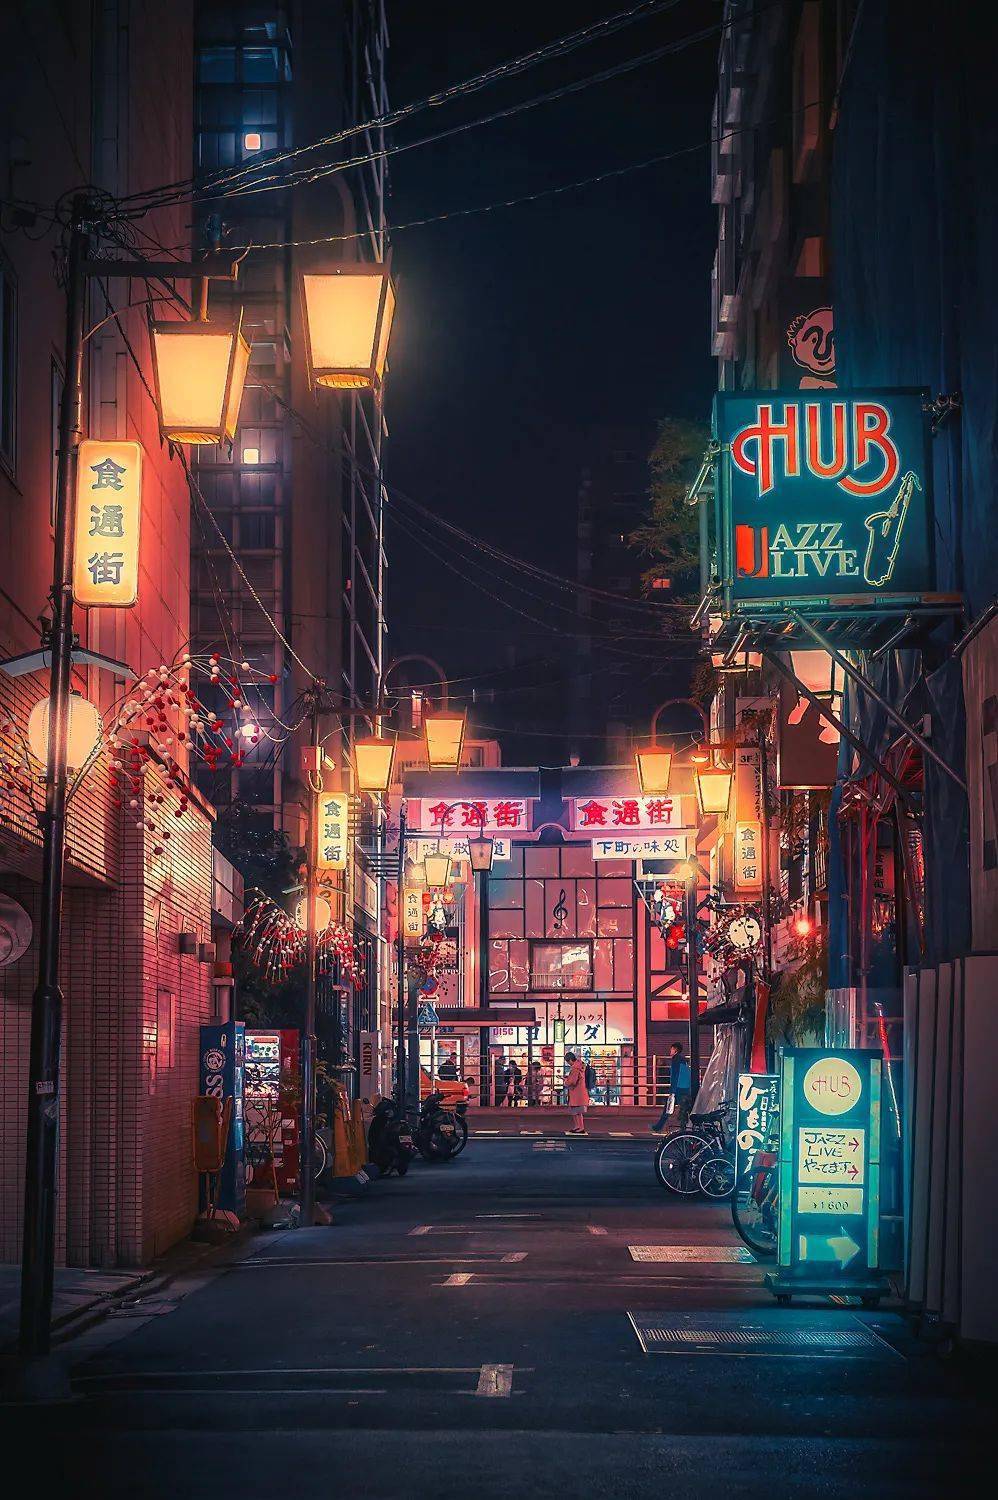 随手一拍都是风景镜头下的日本街头招牌文字夜景